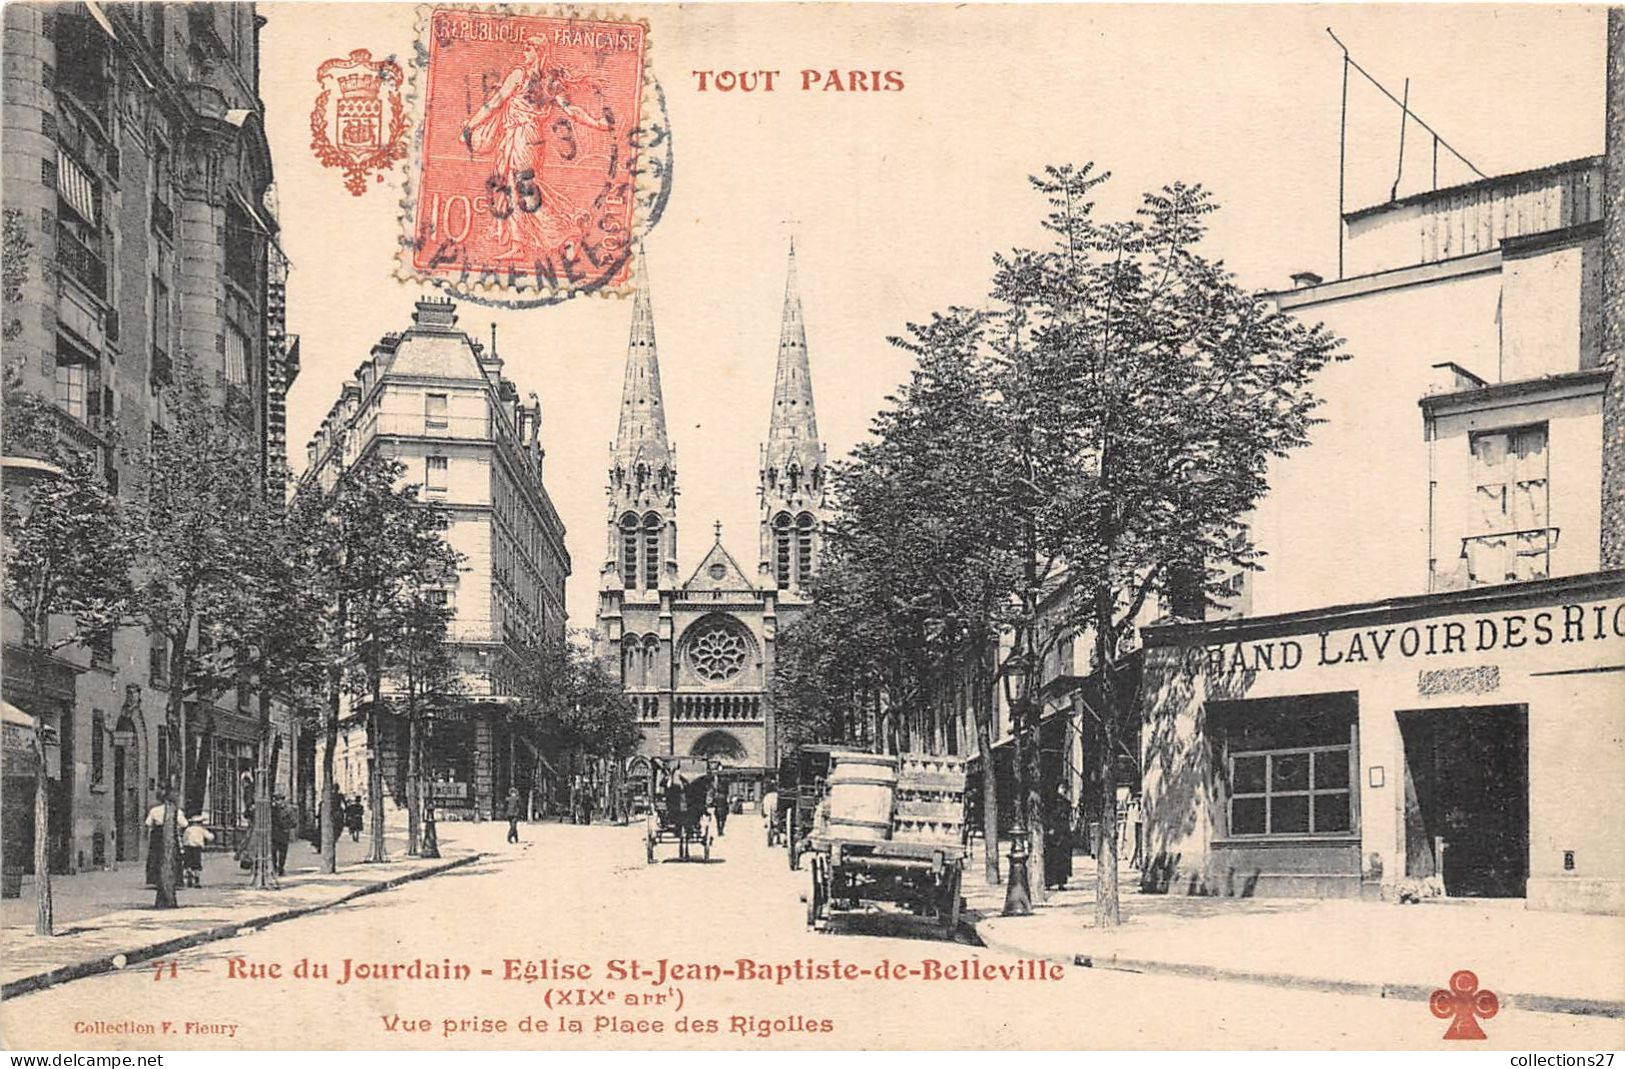 PARIS-75019- TOUT PARIS- RUE DU JOURDAIN , EGLISE ST-JEAN-BAPTISTE-DE-BELLEVILLE VUE PRISE DE LA PLACE RIGOLLES - Arrondissement: 19